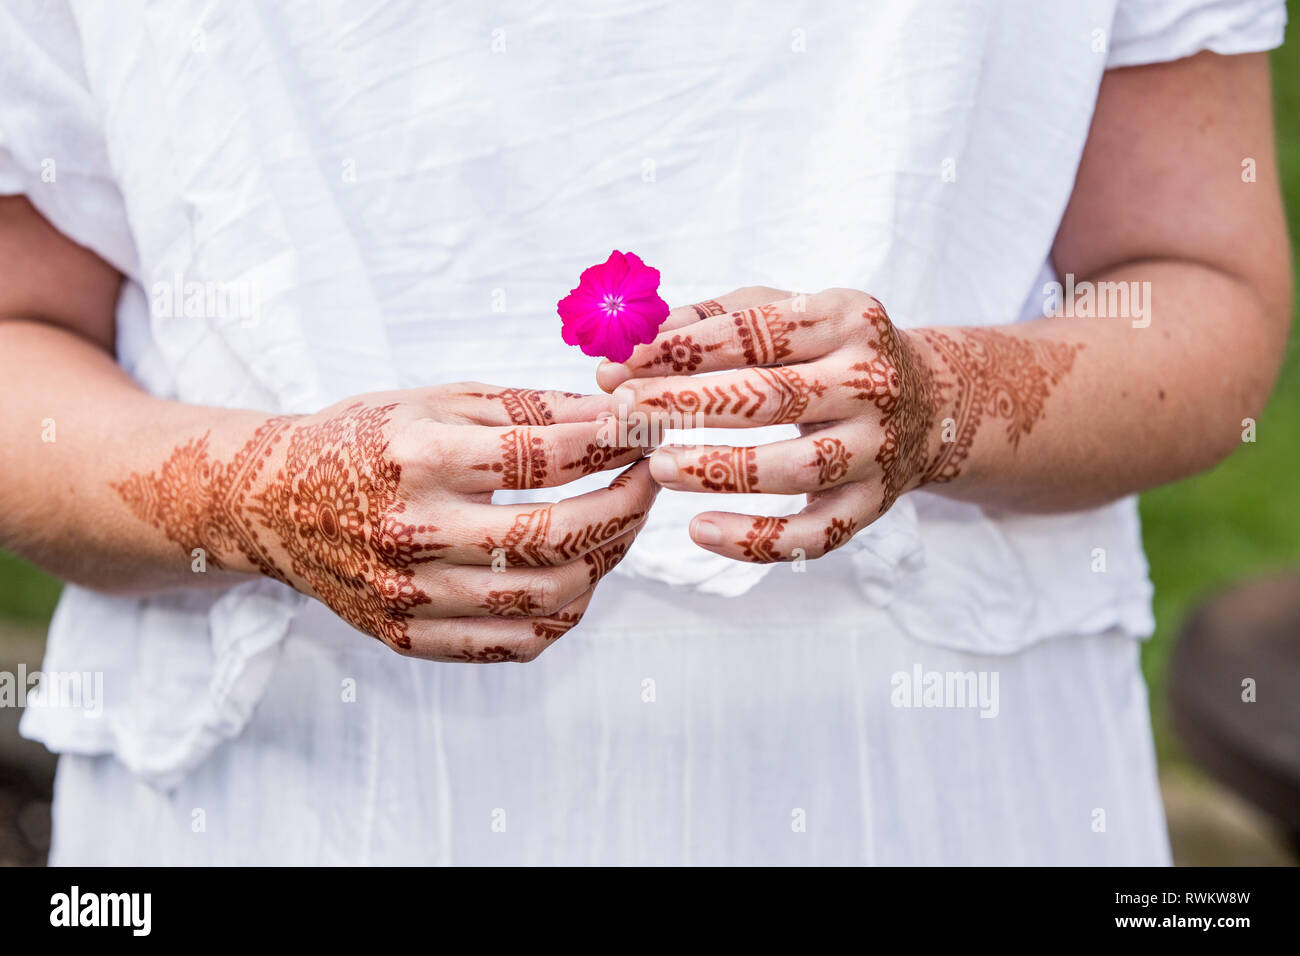 Femme en robe blanche avec tatouage au henné sur les mains holding flower Banque D'Images